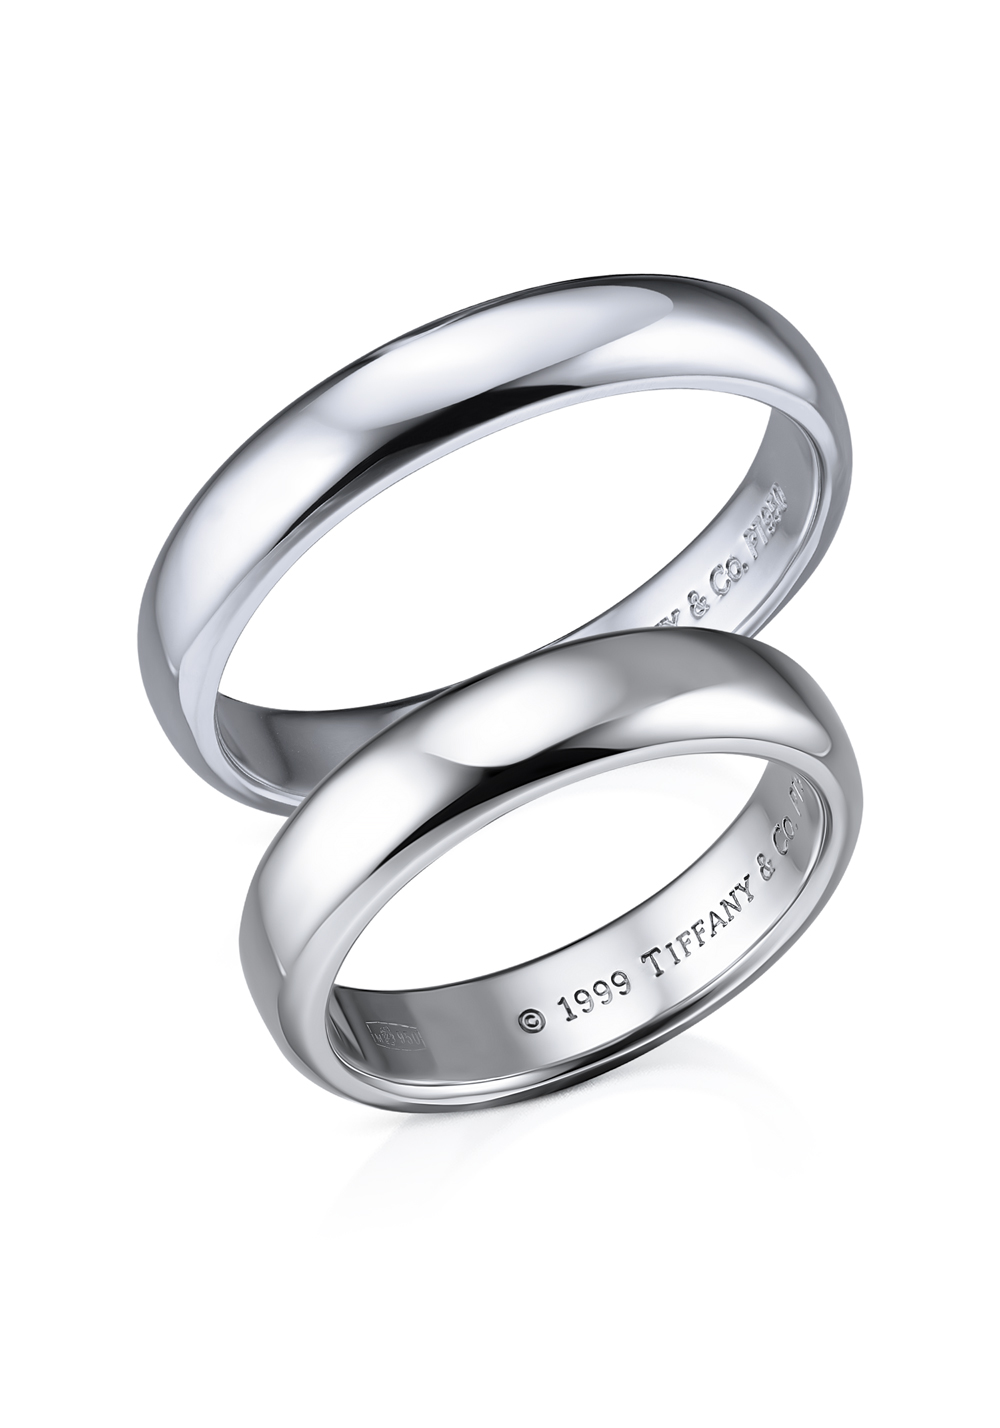 Кольцо Tiffany & Co Wedding Platinum Ring (33503) купить в Москве, выгодная цена - ломбард на Кутузовском